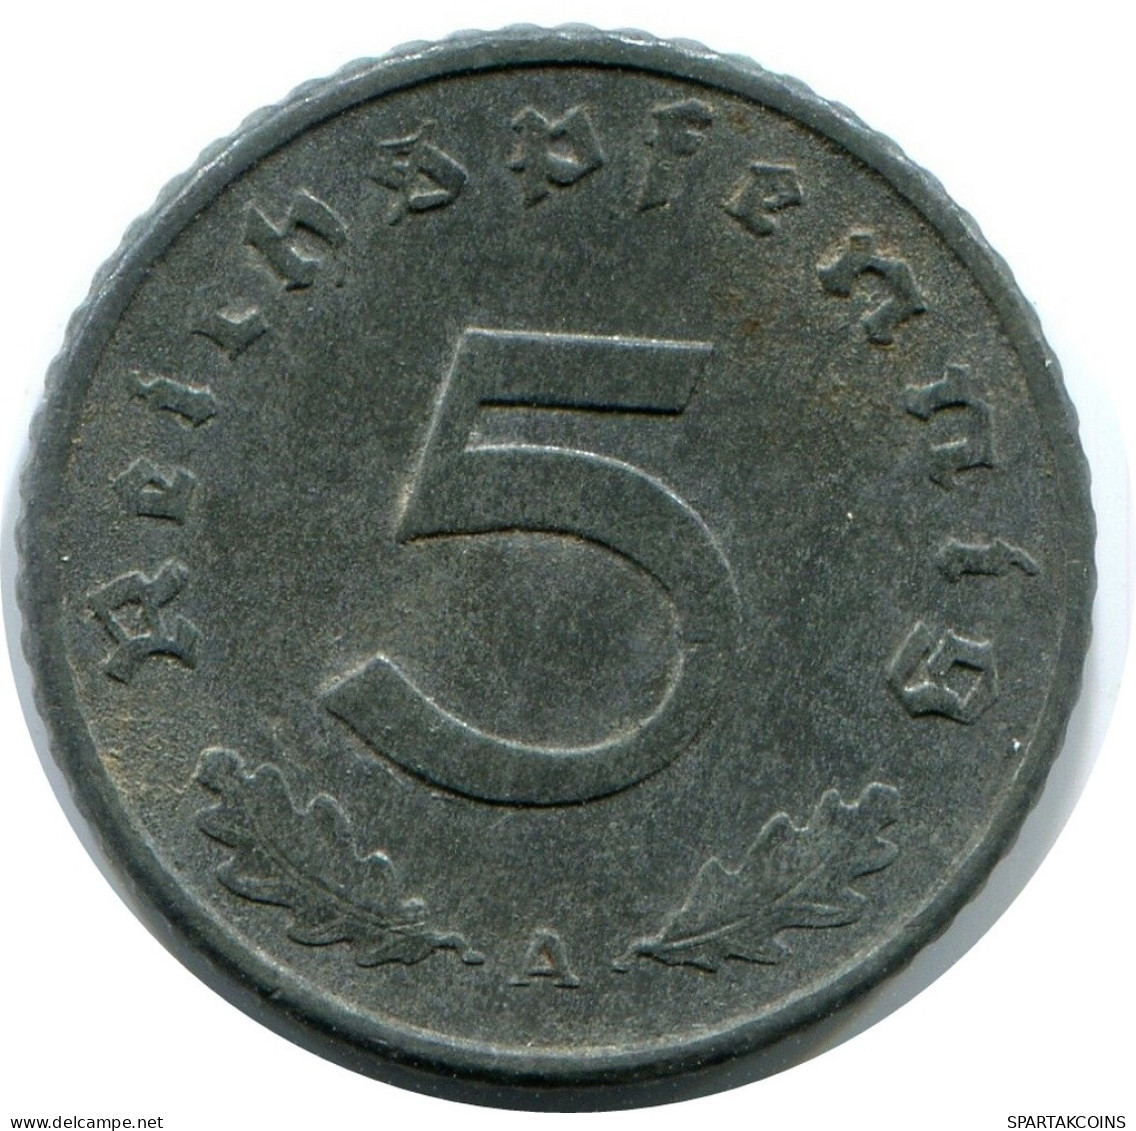 5 REICHSPFENNIG 1941 A DEUTSCHLAND Münze GERMANY #DA787.D.A - 5 Reichspfennig